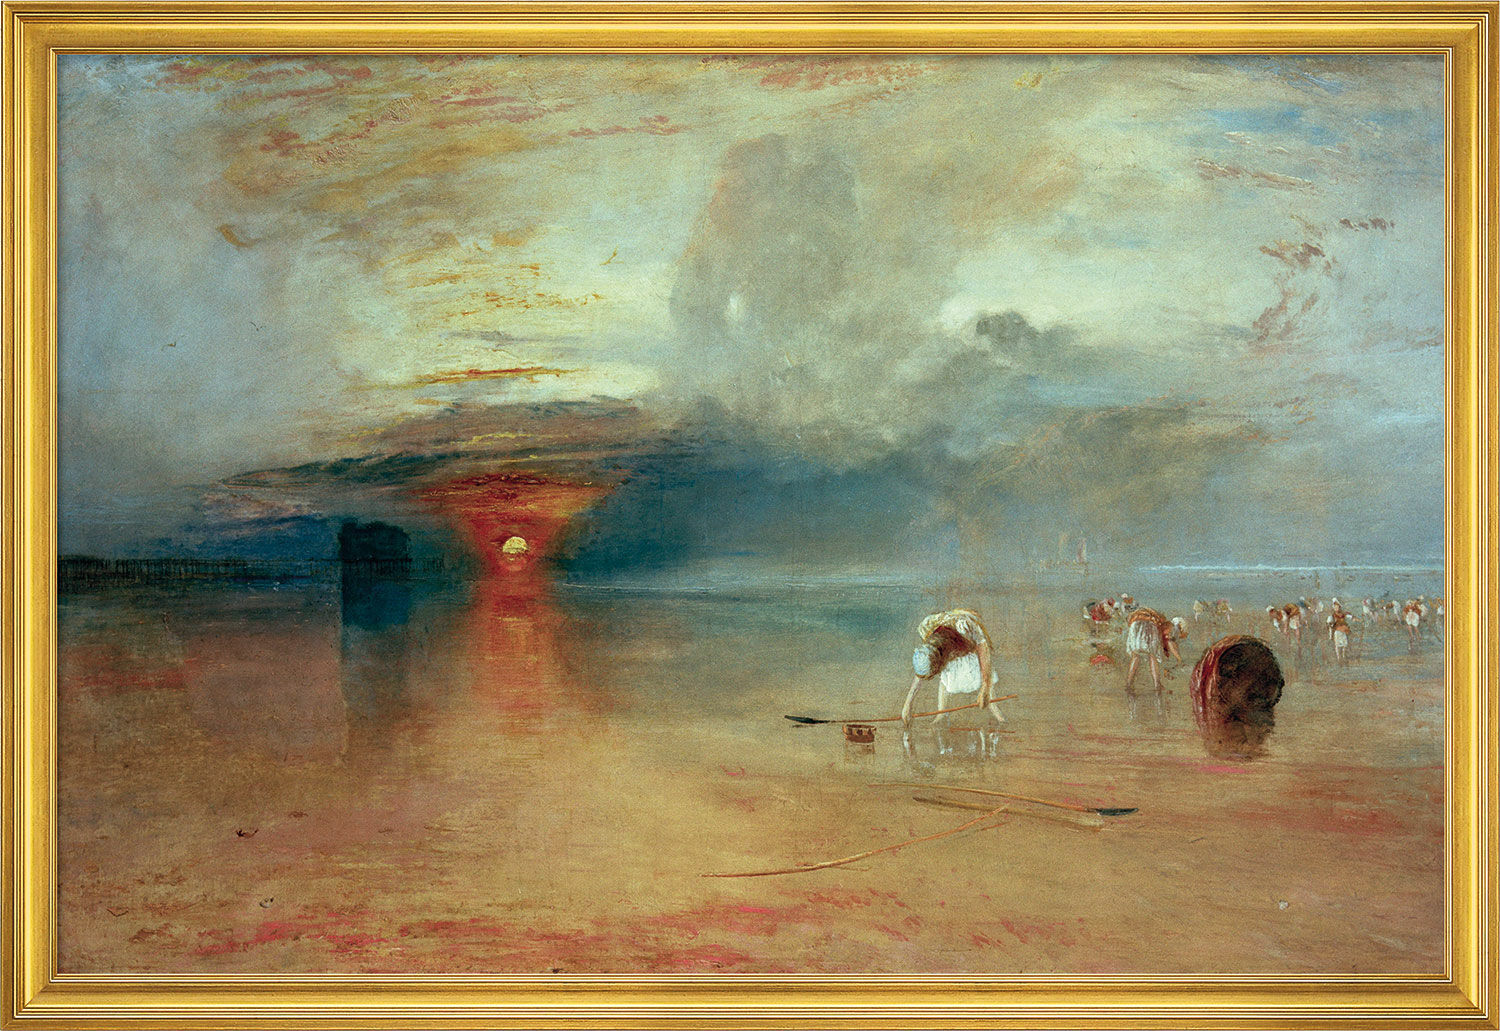 Bild "Calais Beach" (1830), inramad von William Turner